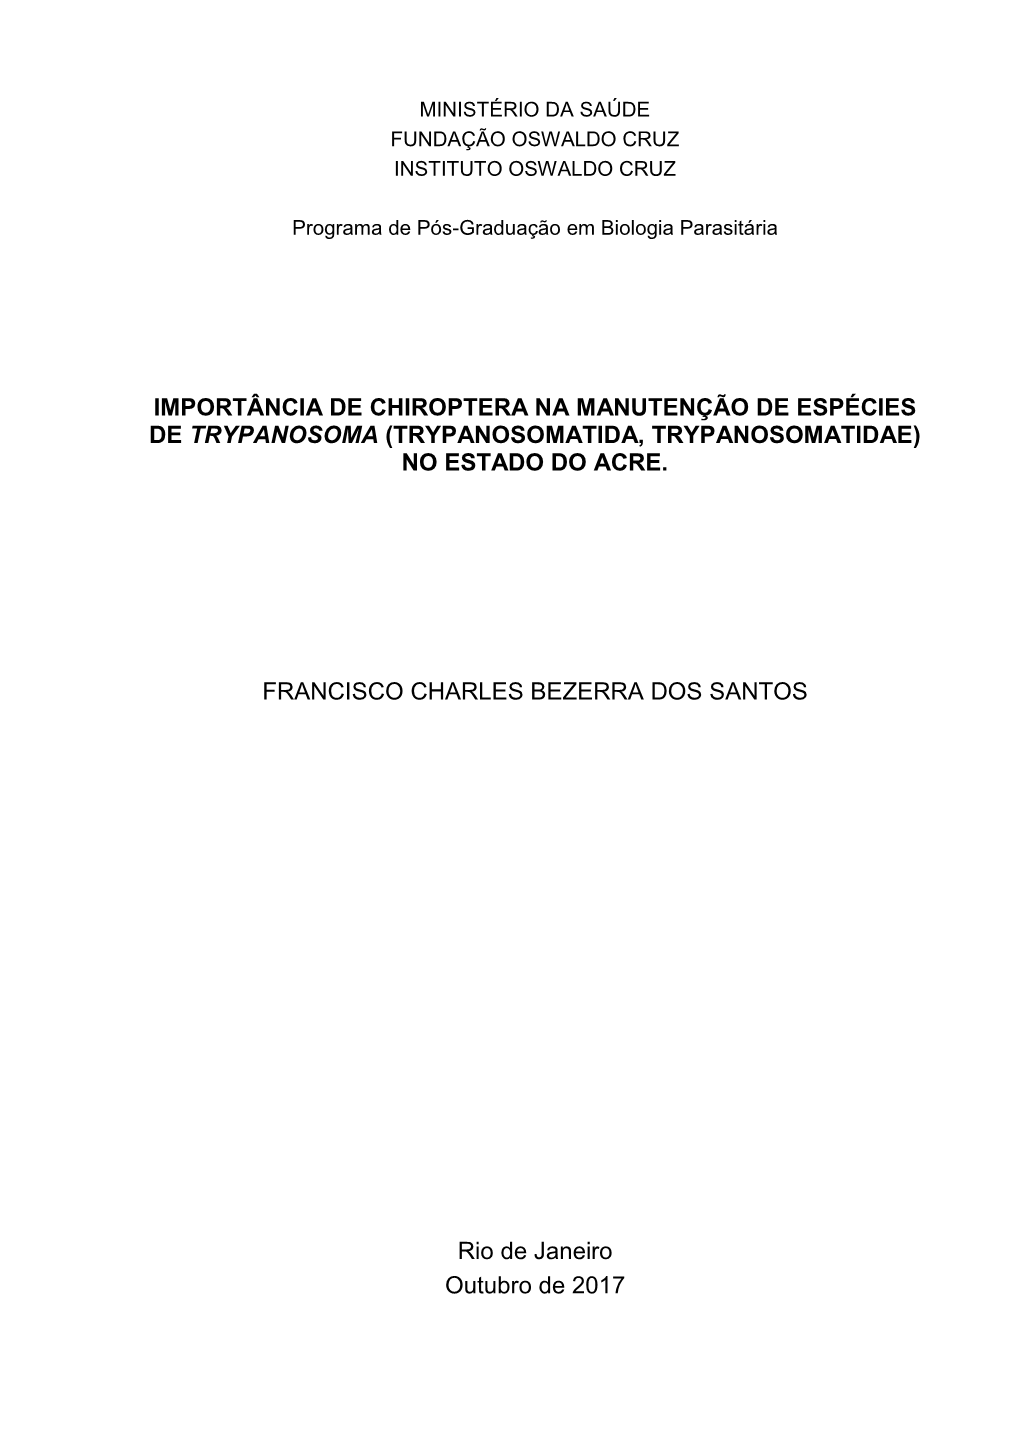 Importância De Chiroptera Na Manutenção De Espécies De Trypanosoma (Trypanosomatida, Trypanosomatidae) No Estado Do Acre